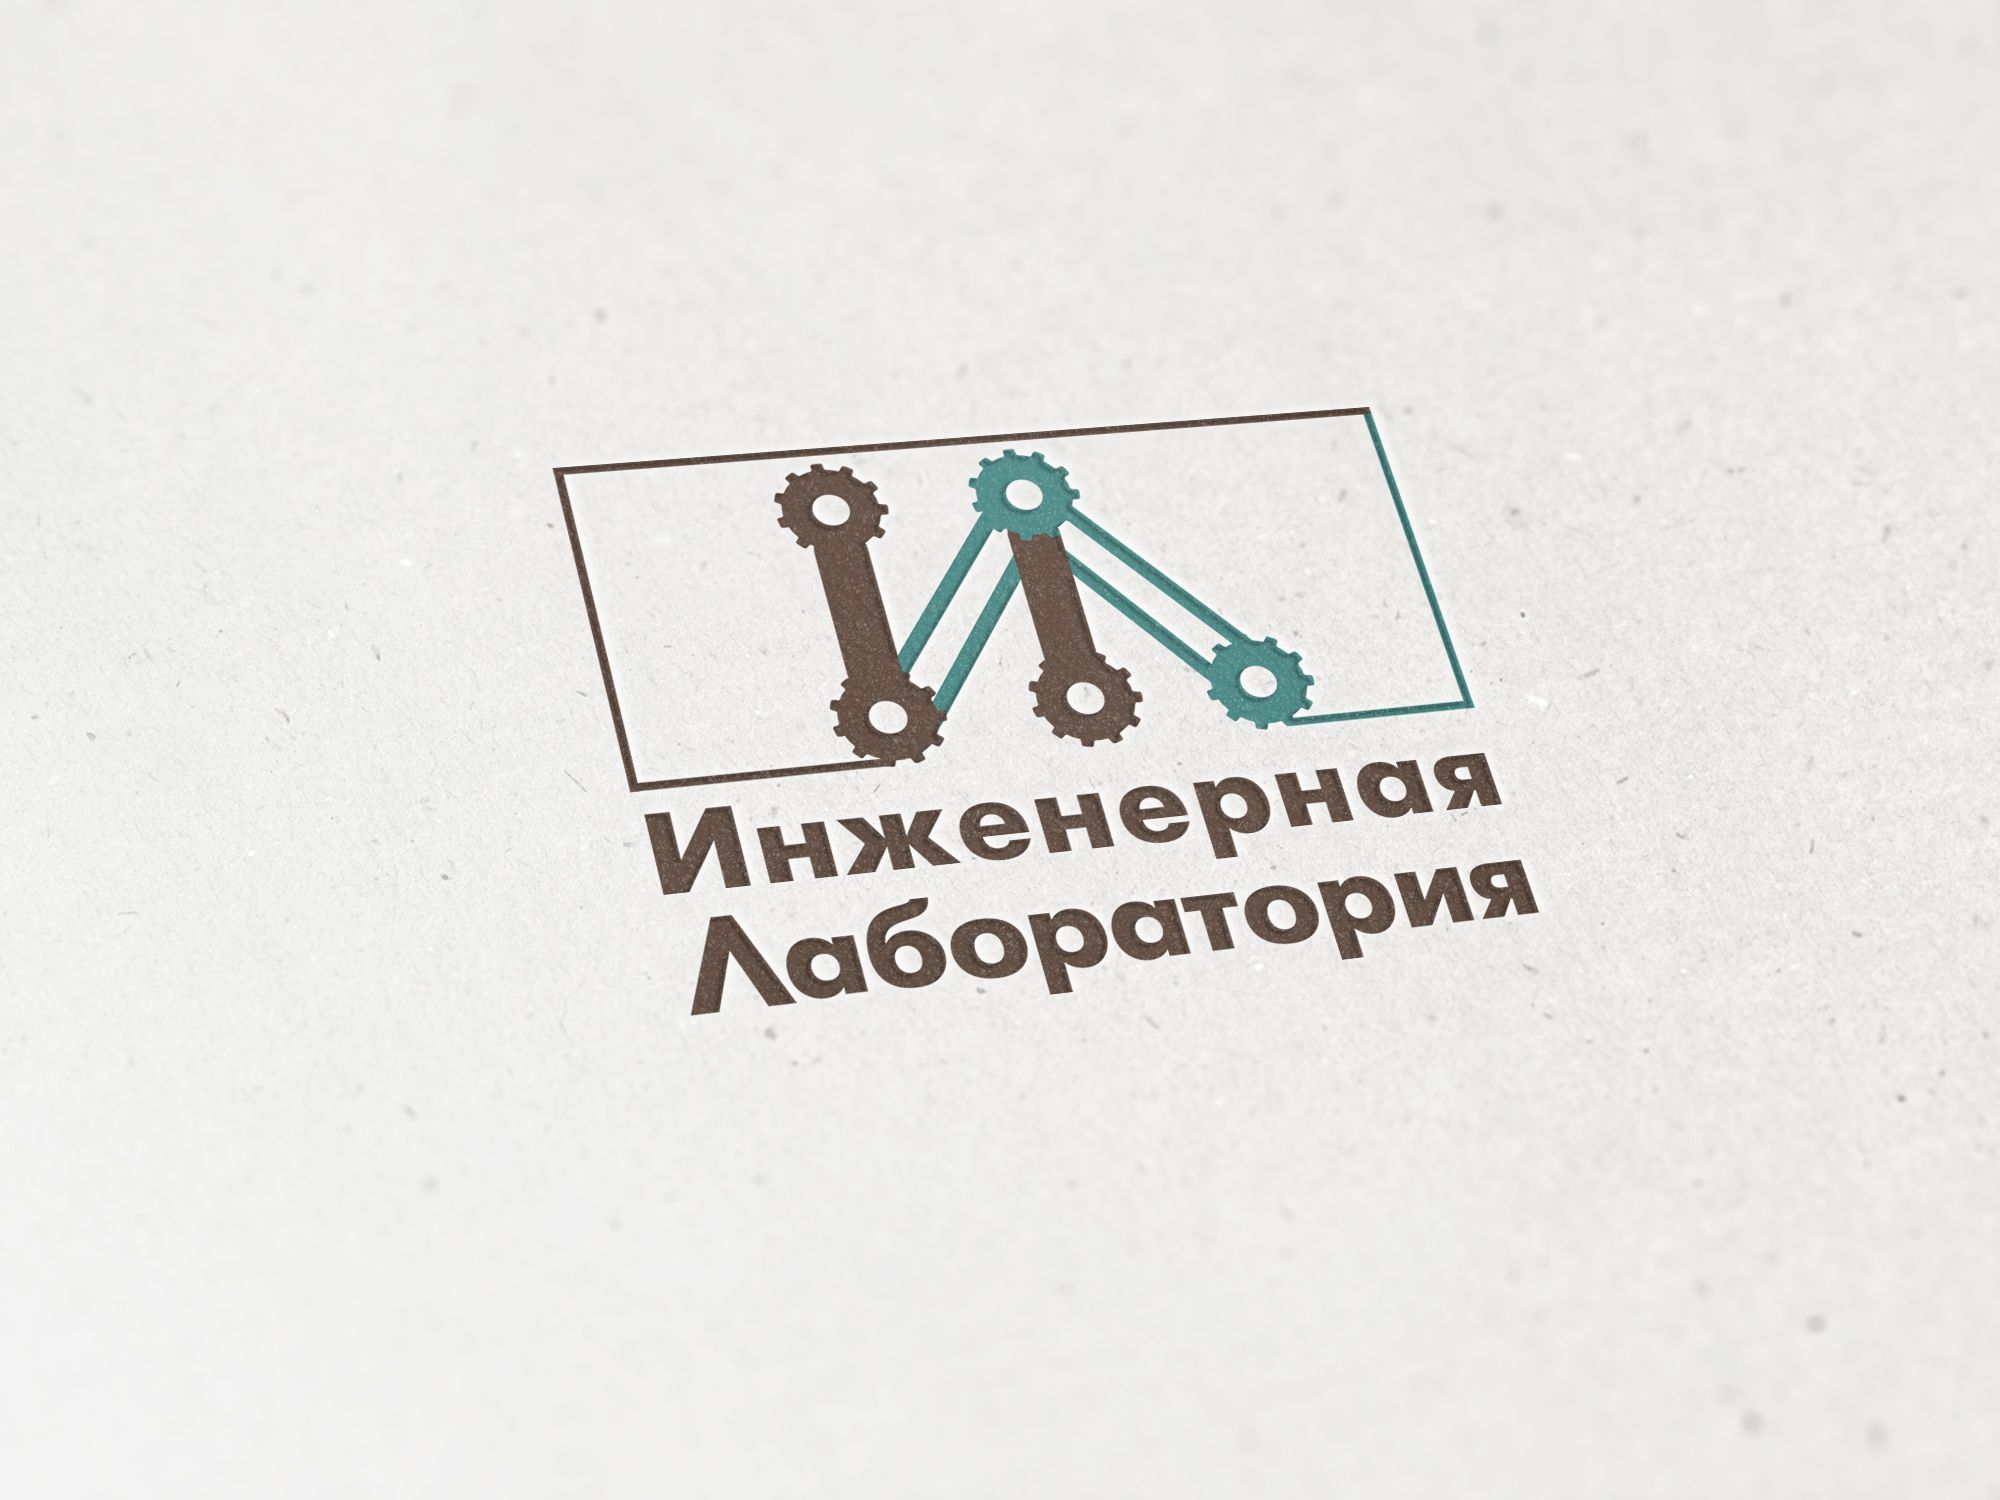 Лого и фирменный стиль для Инженерная лаборатория  - дизайнер nuta_m_